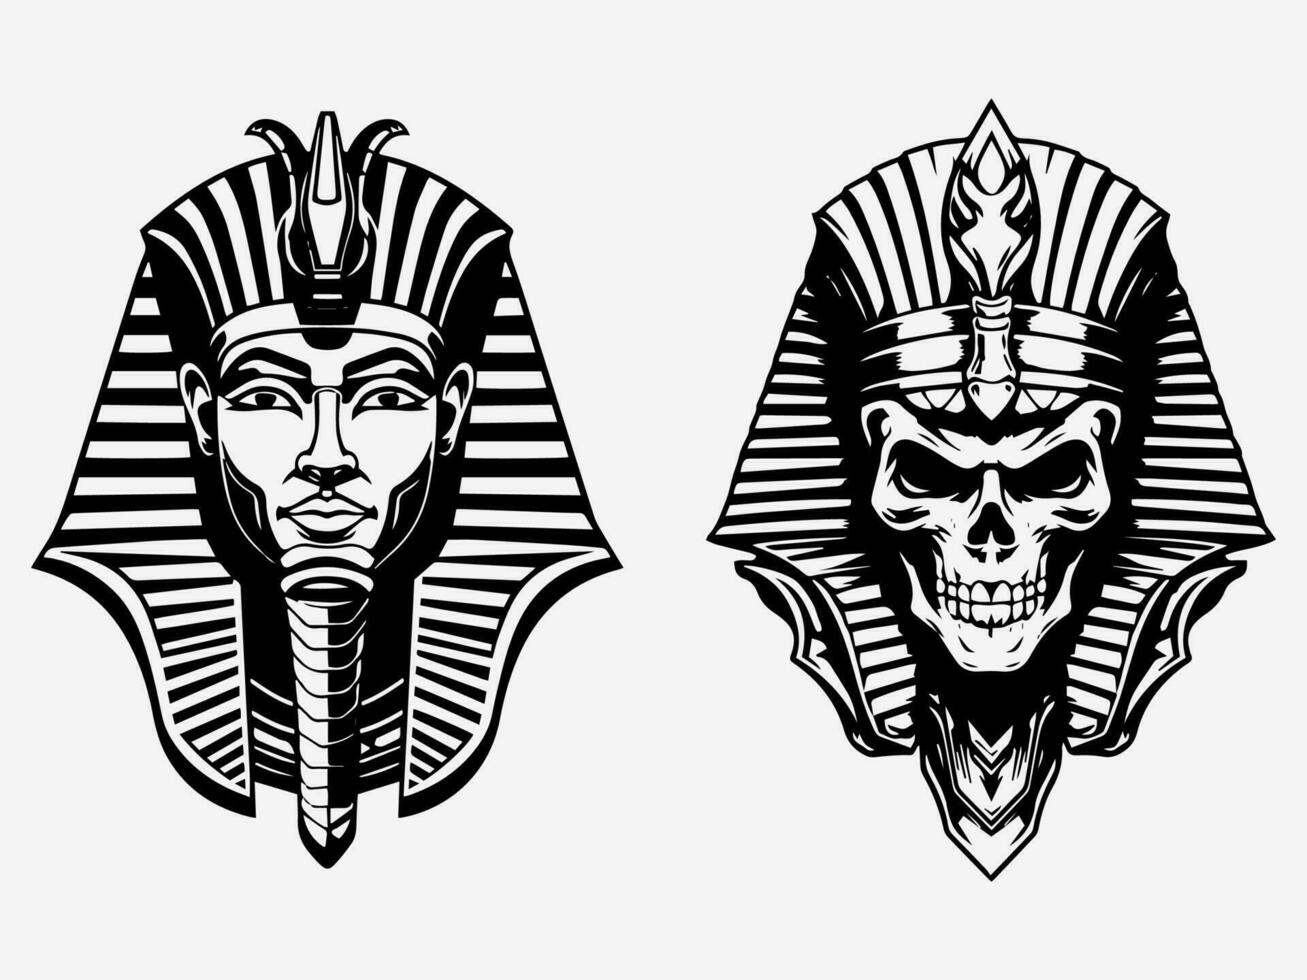 vorstelijk en boeiend Farao hand- getrokken logo ontwerp illustratie, oproepen tot oude Egyptische mystiek en Gezag vector